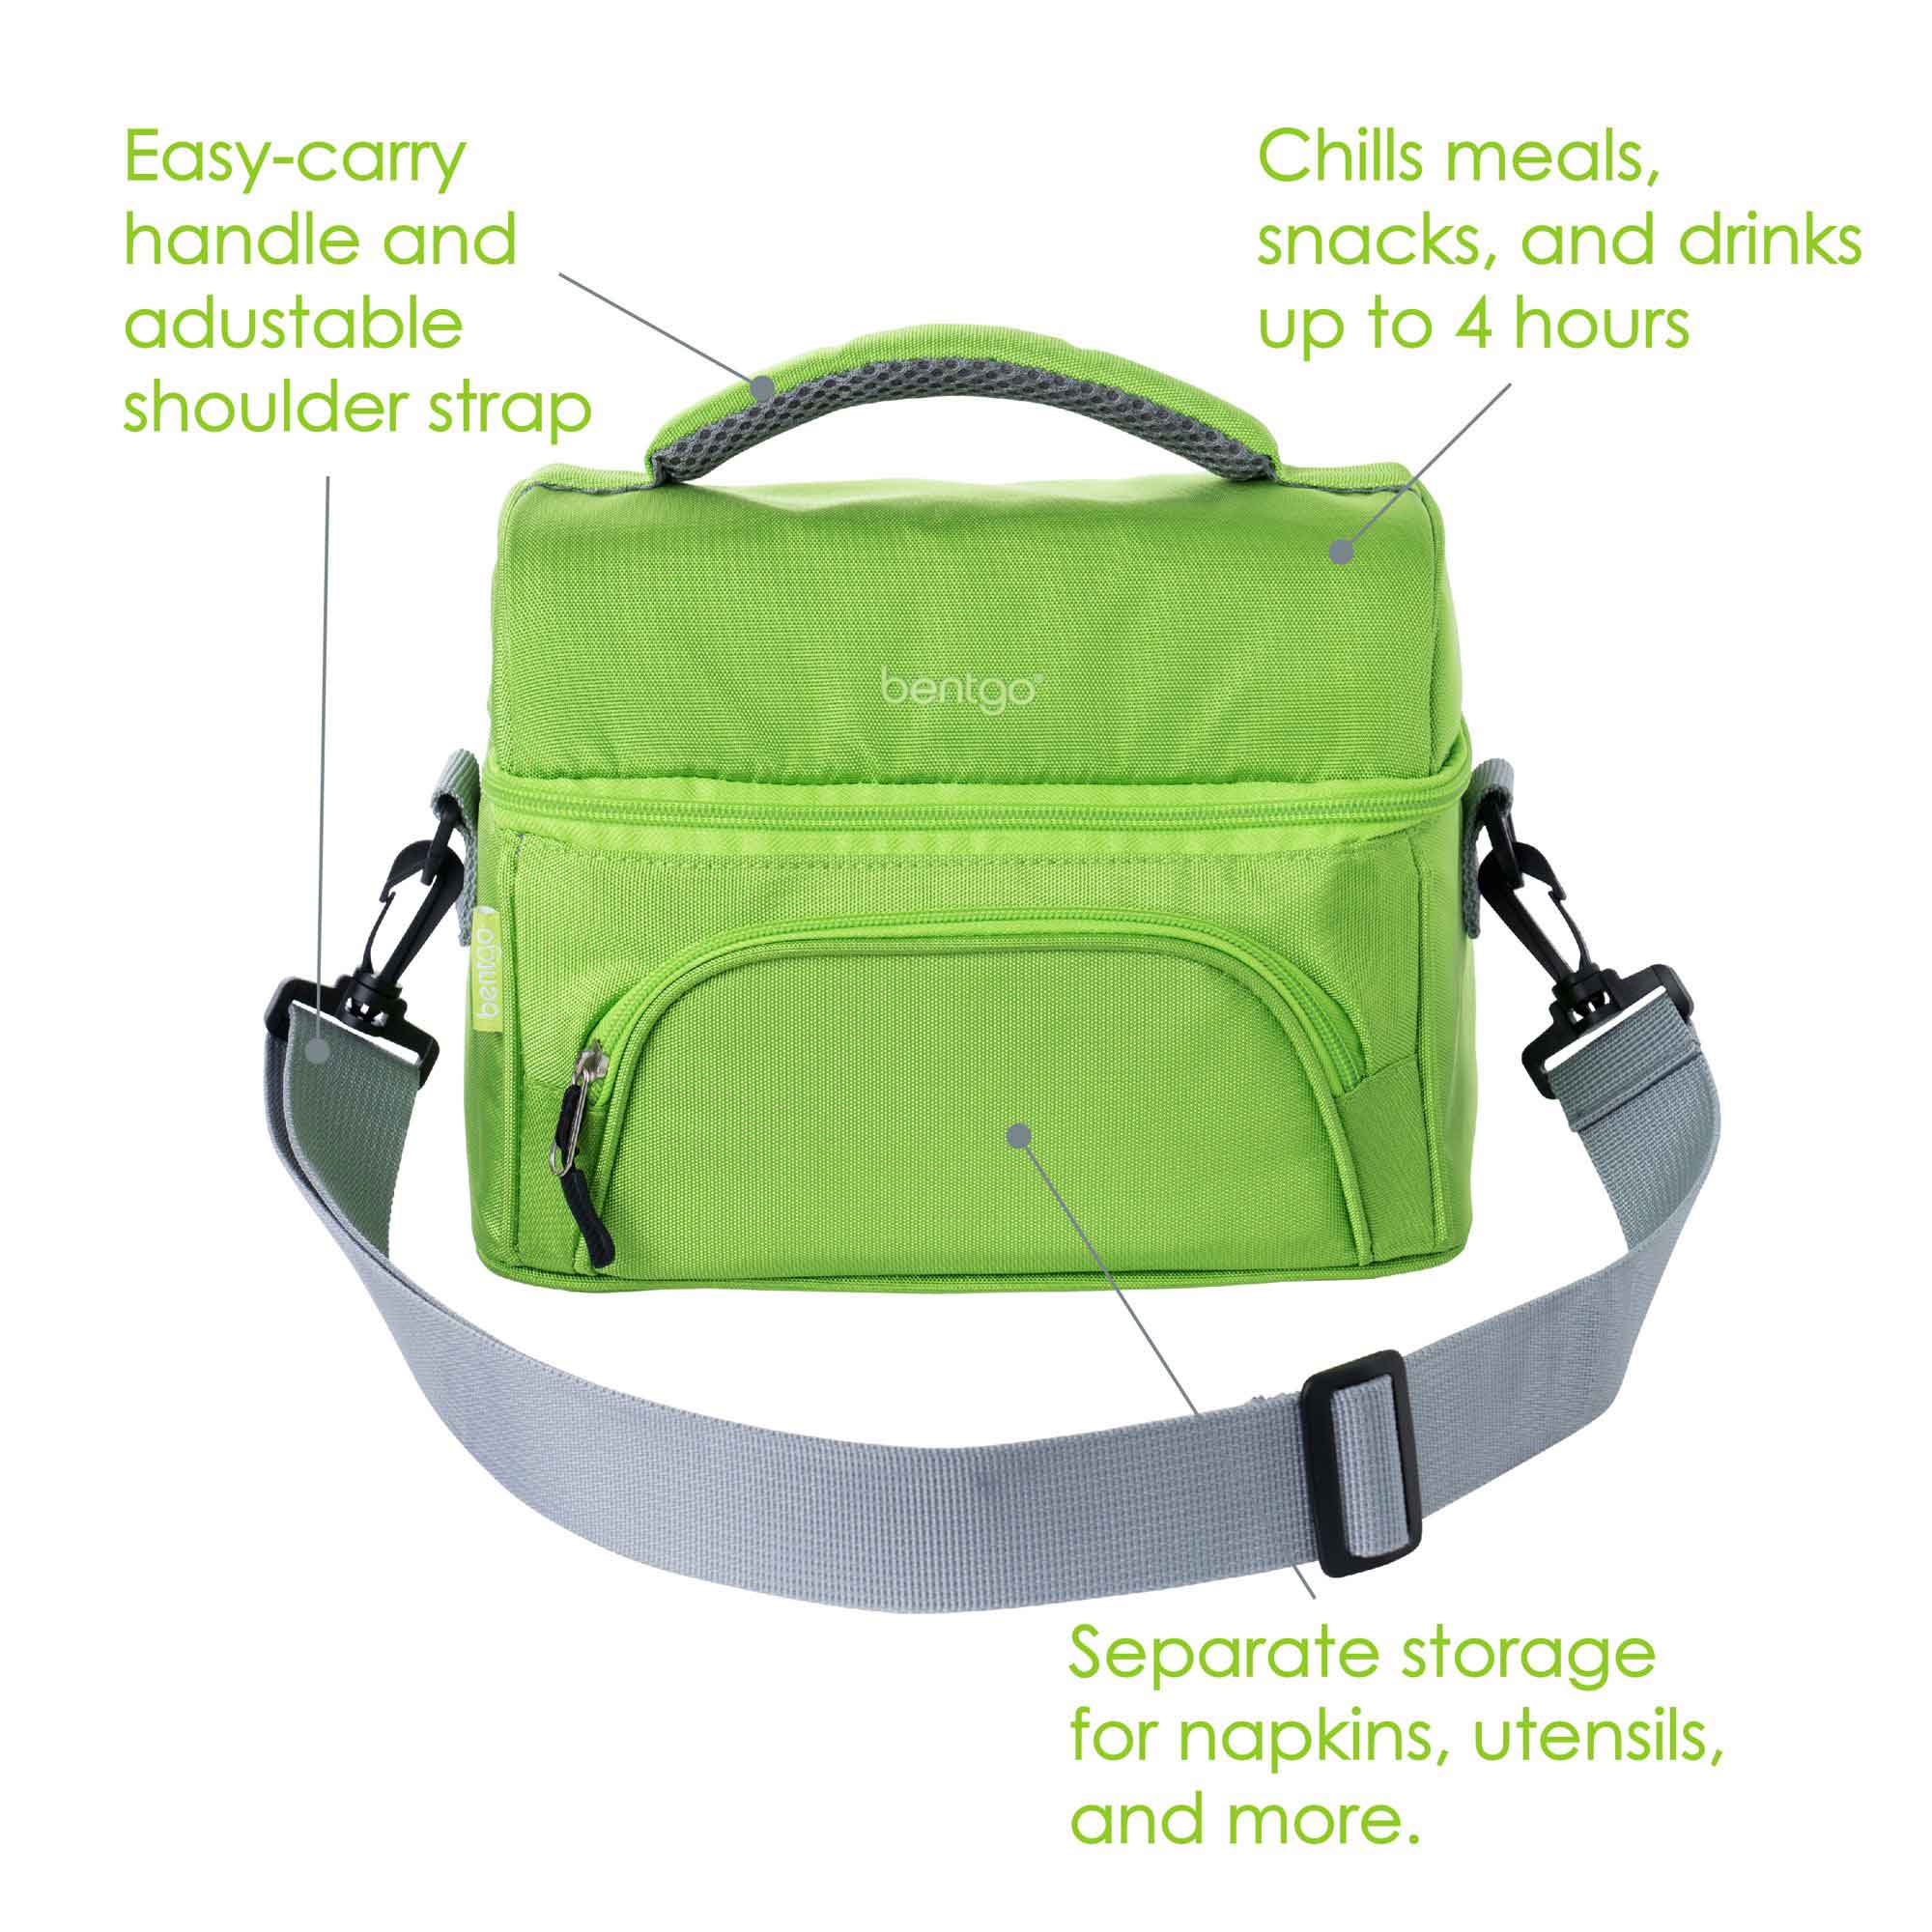 Deluxe Bentgo Lunch Bag, Green - Zars Buy